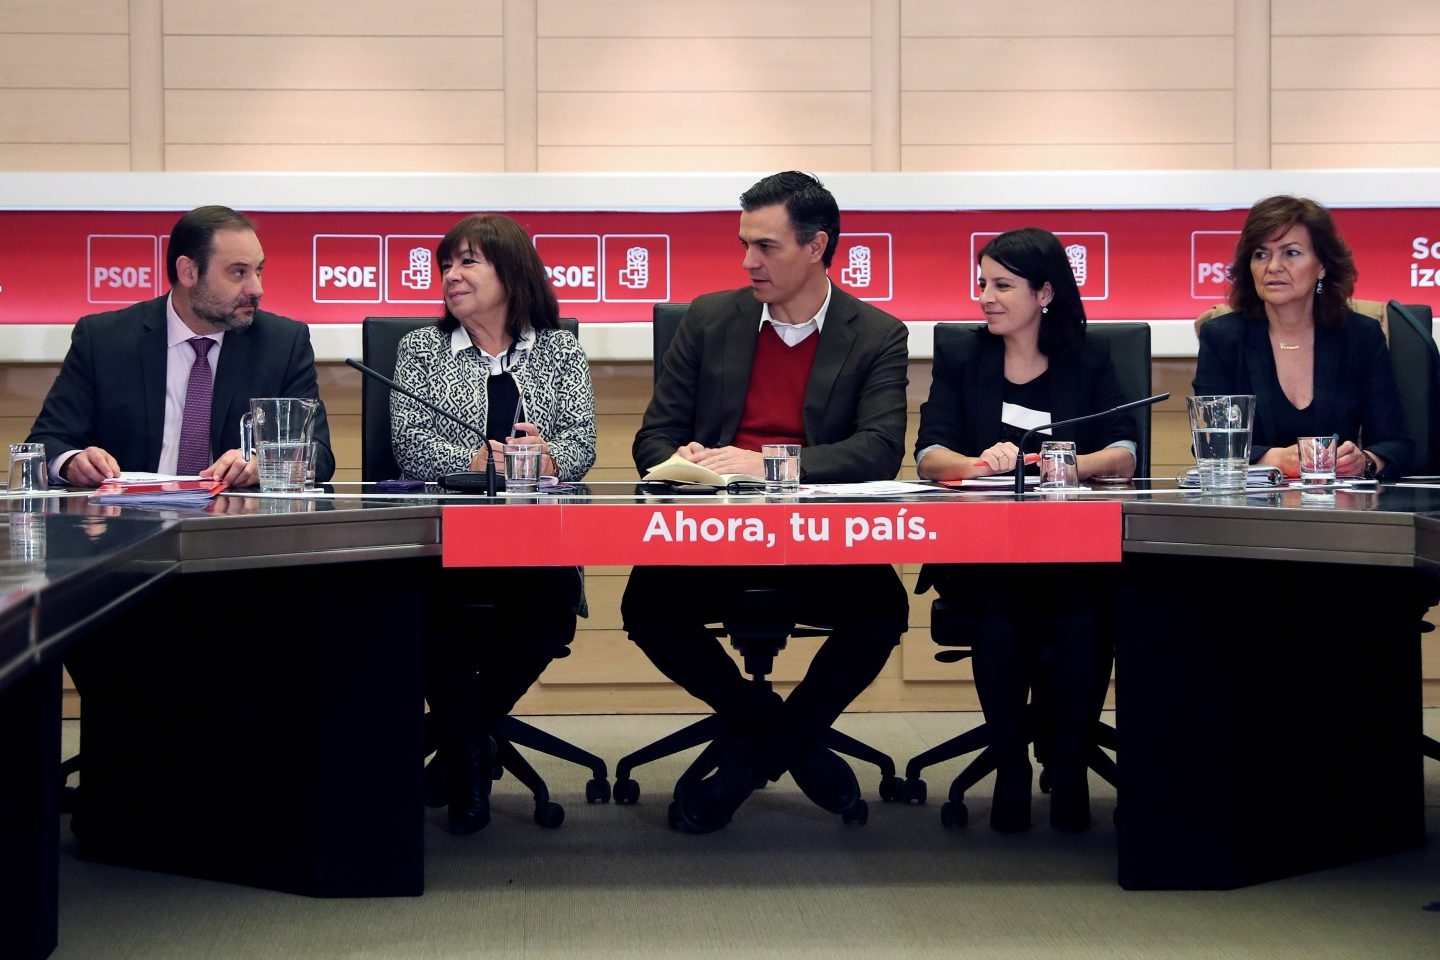 El PSOE compara a Albert Rivera con José Antonio y luego lo retira: "Hace bueno al PP"